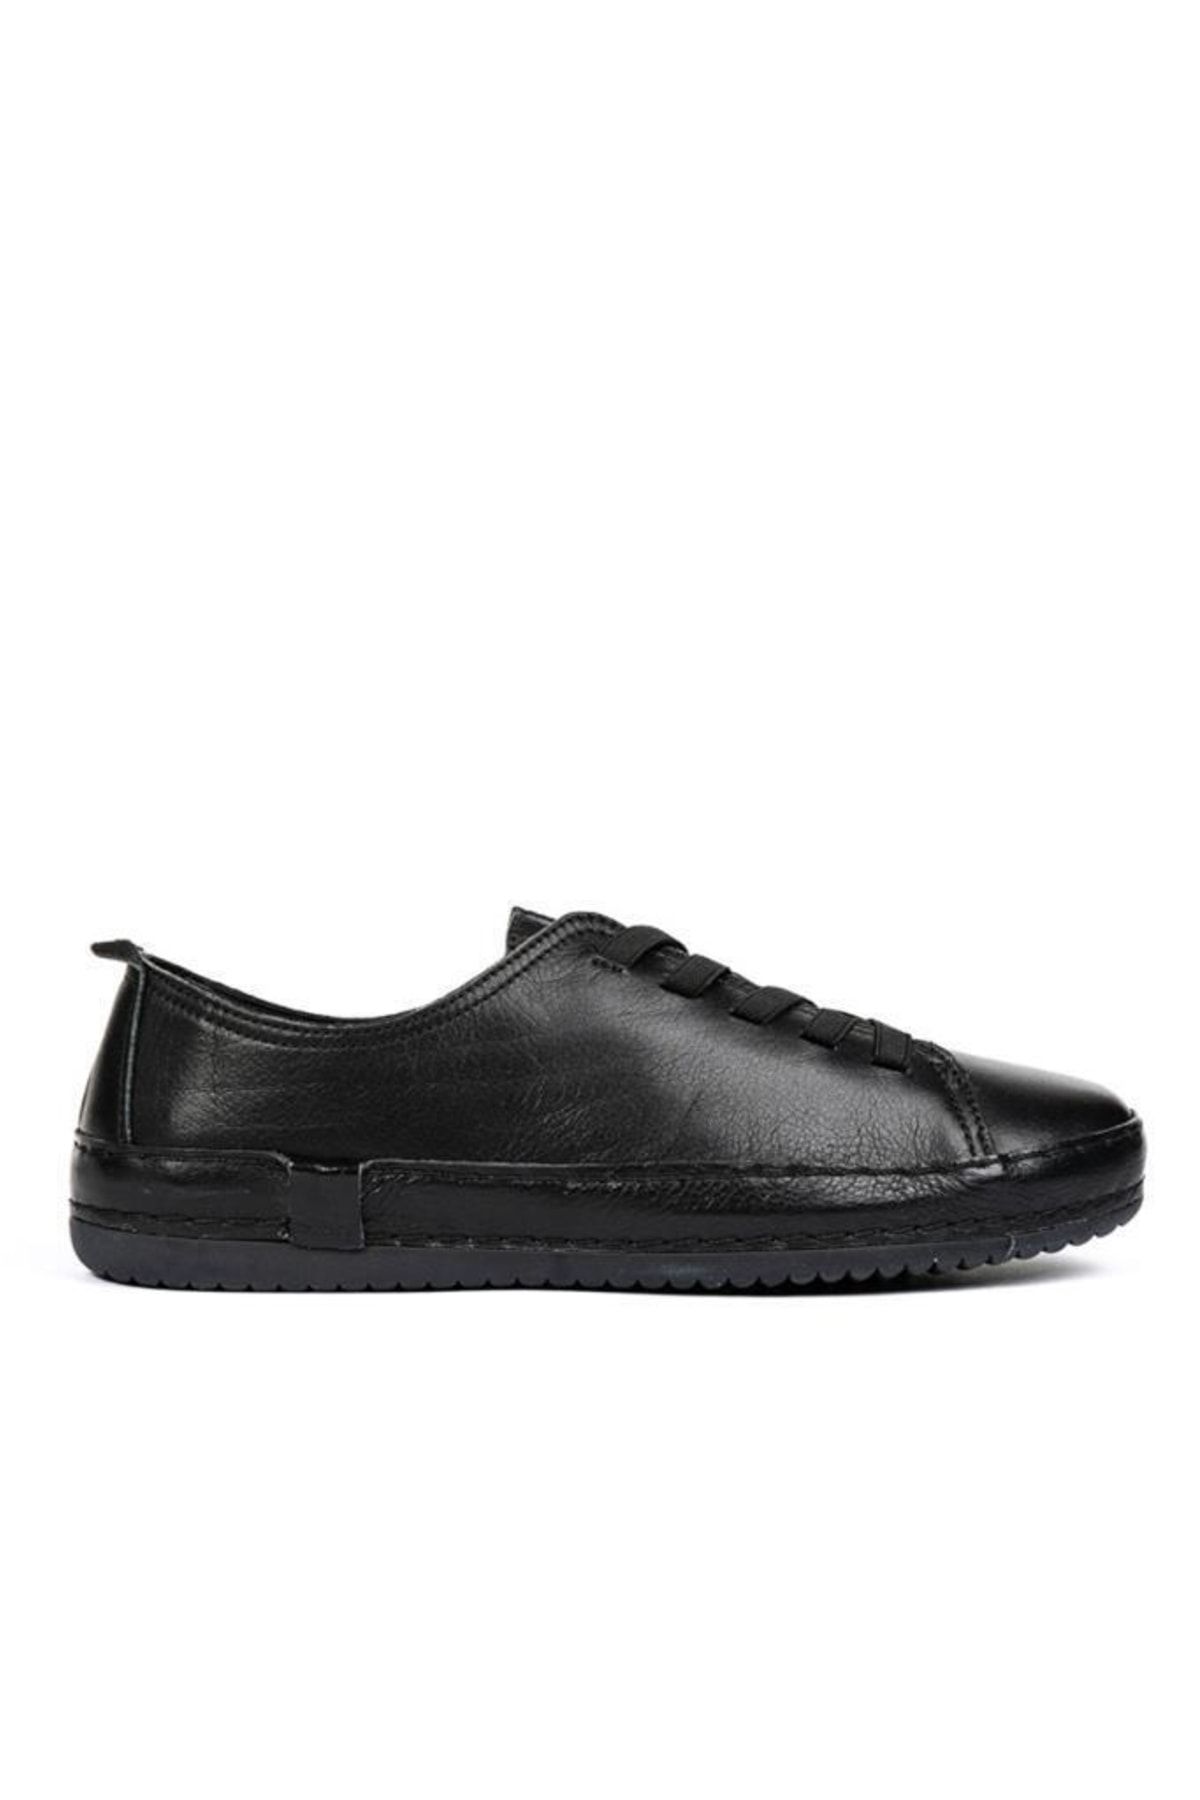 Greyder 57708 Siyah Deri Kadın Günlük Casual Ayakkabı